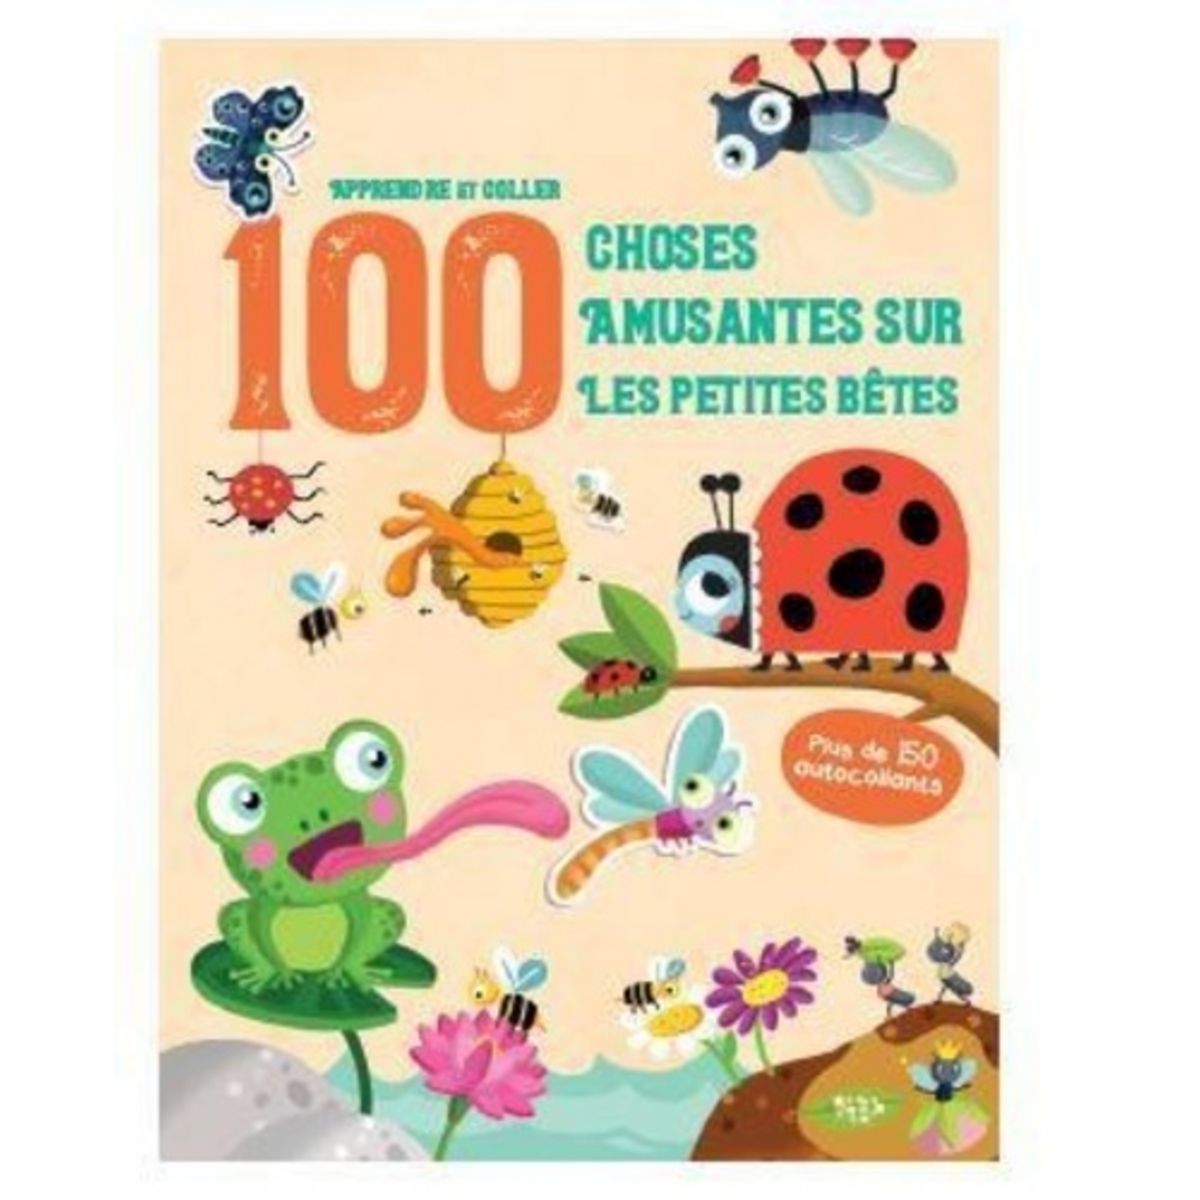  100 CHOSES AMUSANTES SUR LES PETITES BETES. PLUS DE 150 AUTOCOLLANTS, Yoyo éditions